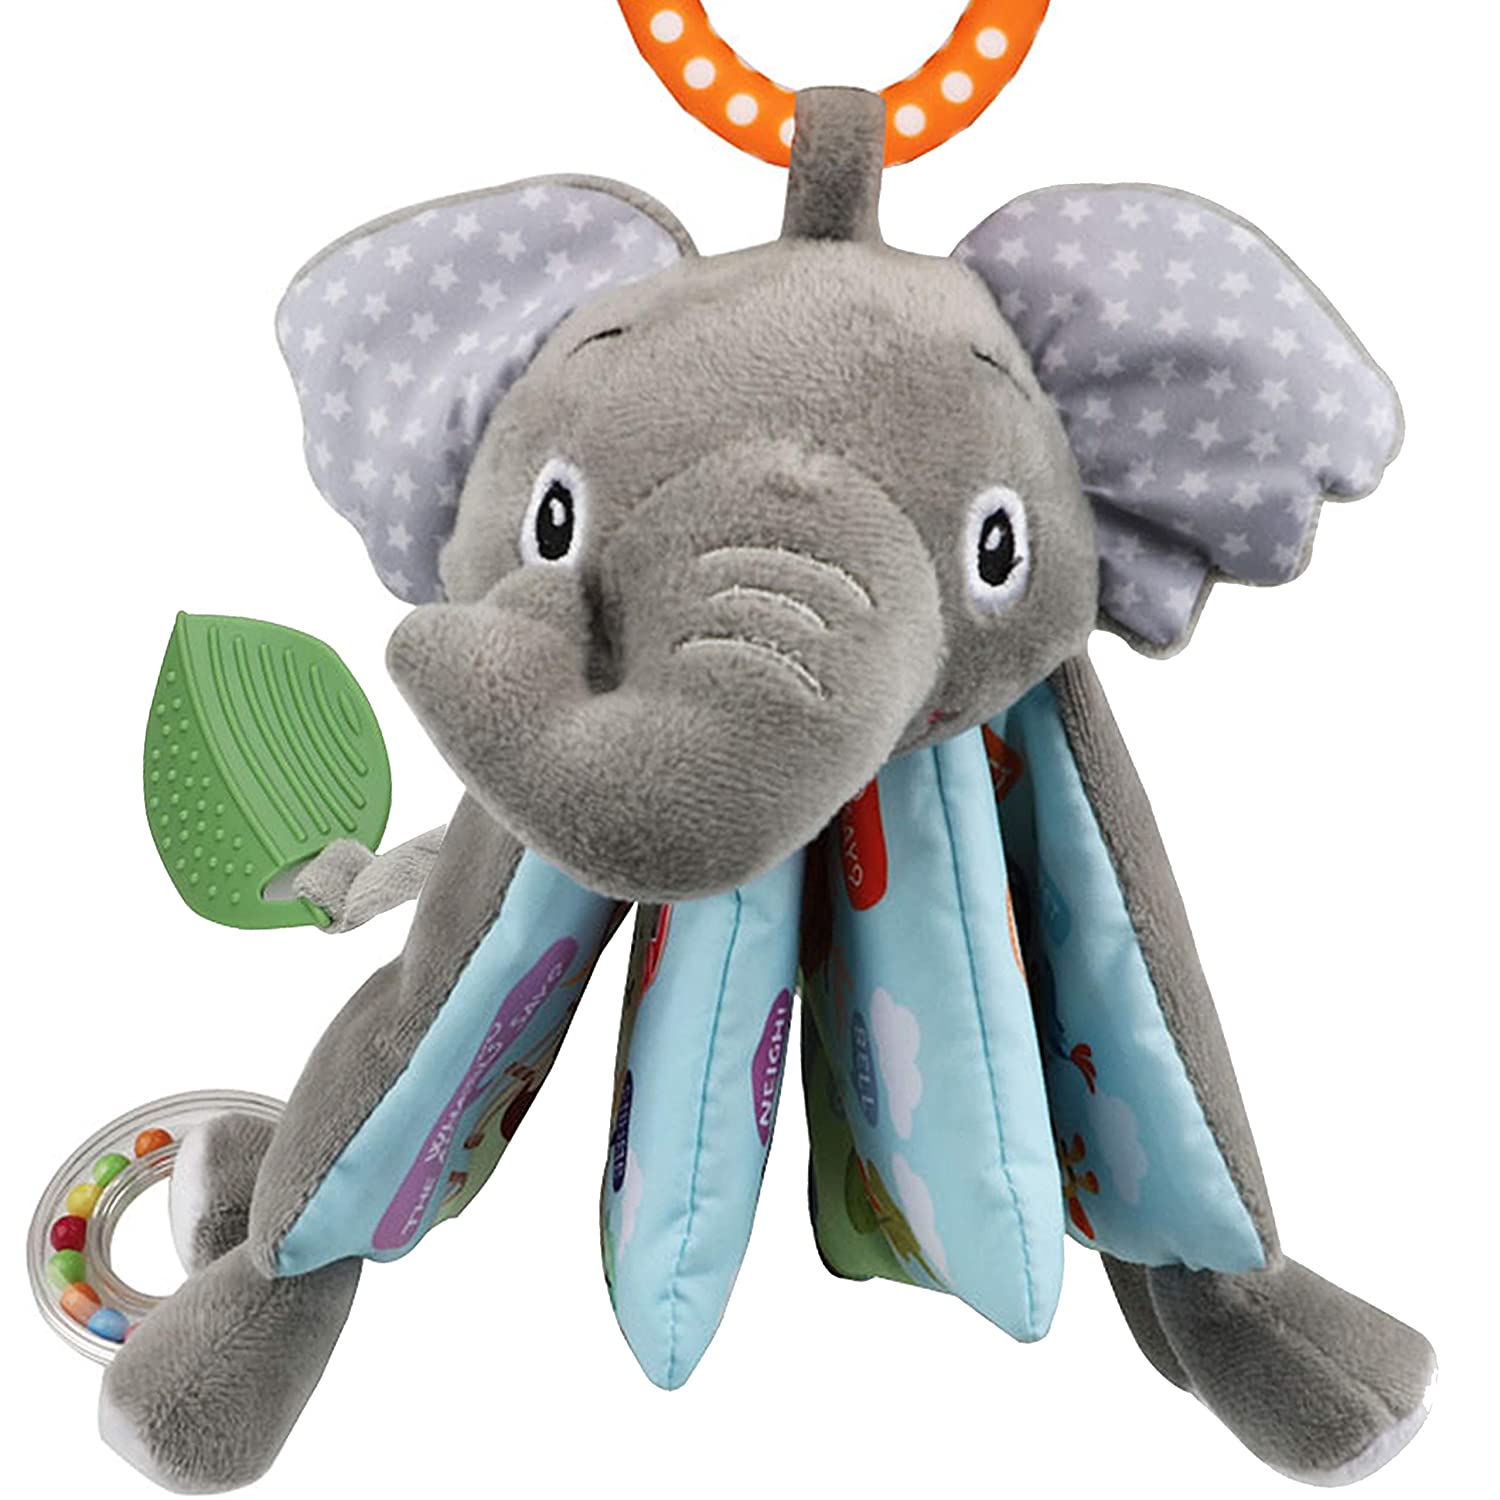 Elephant Fabric Infant Books